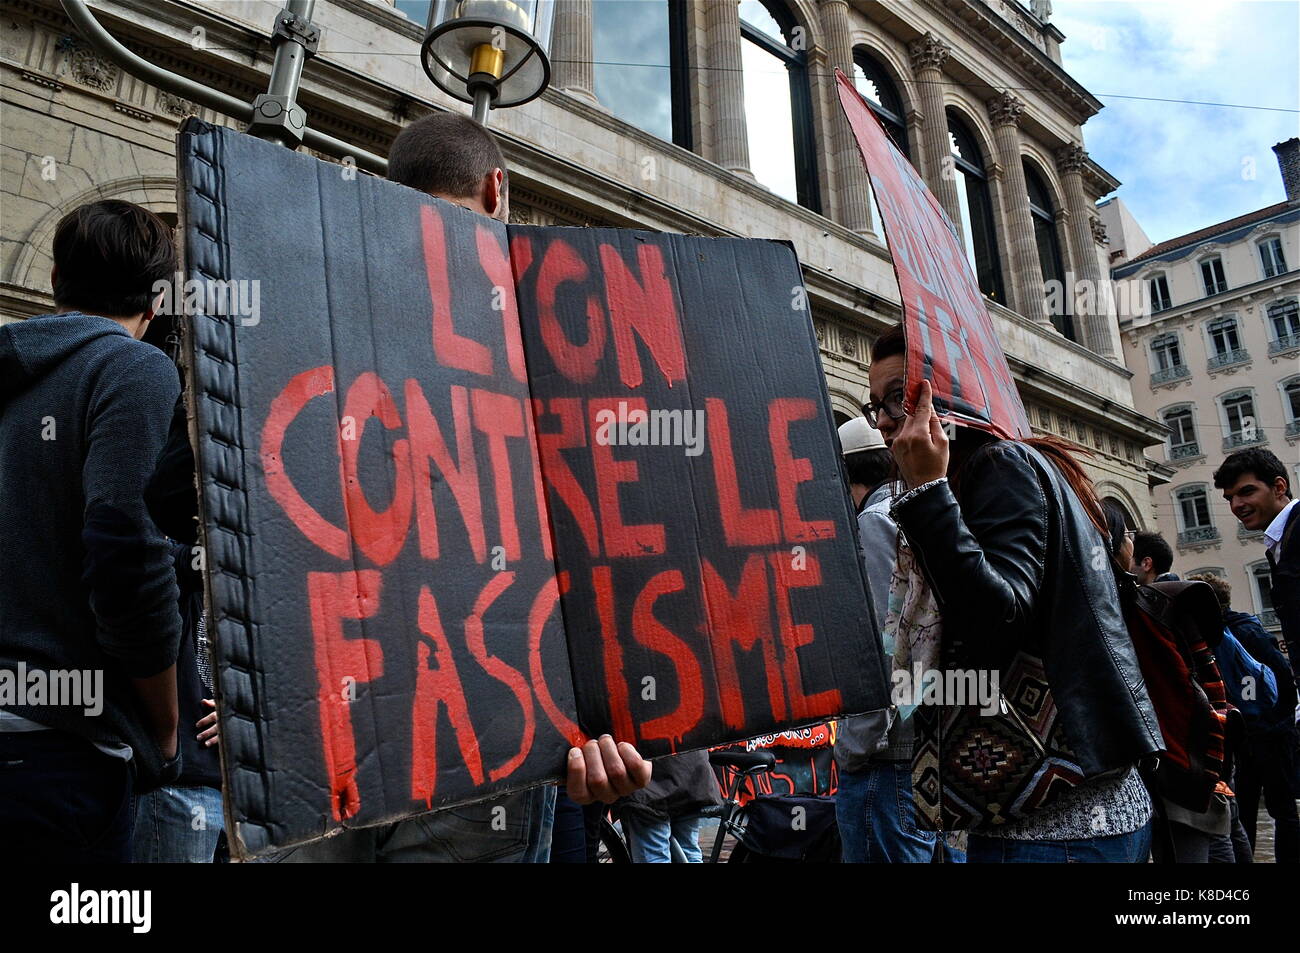 https://c8.alamy.com/compfr/k8d4c6/antifa-manifestation-militants-extreme-droite-ouverture-cafe-a-lyon-france-k8d4c6.jpg